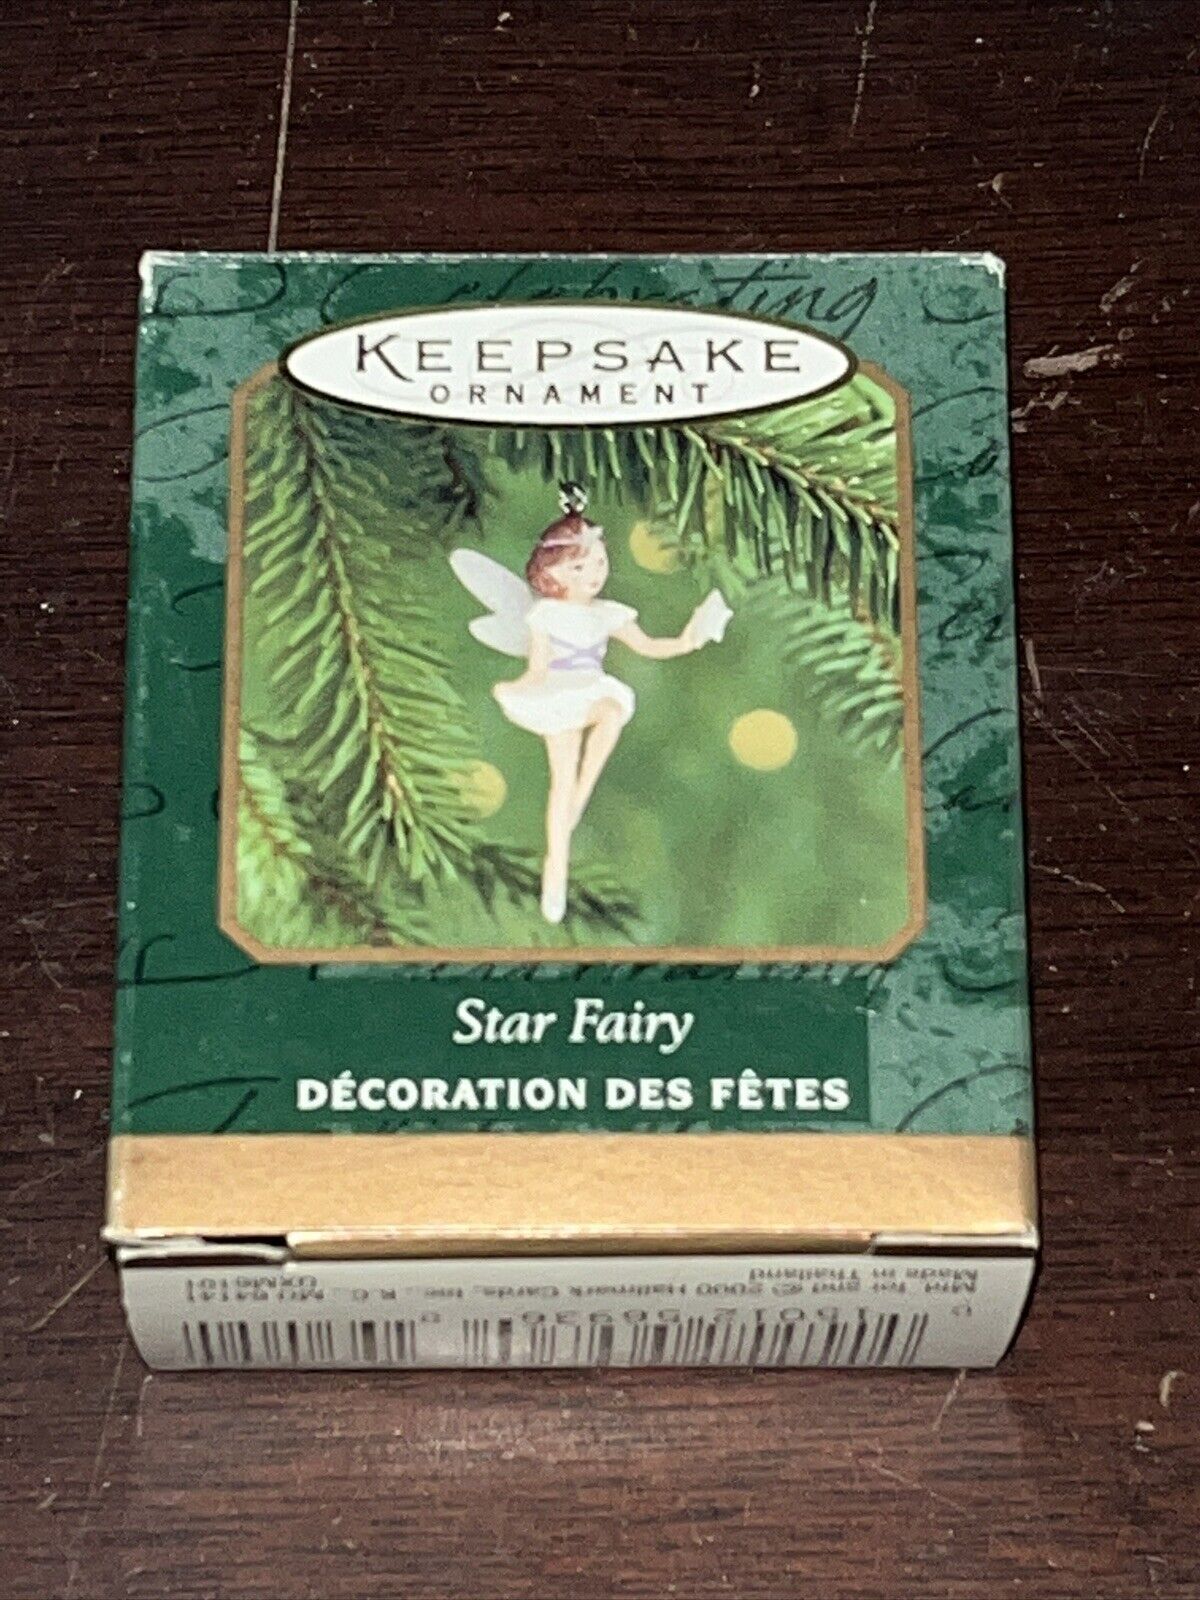 Star Fairy`2000`Miniature-Sprinkle Sweet Stardust On The Trees,Hallmark Ornament